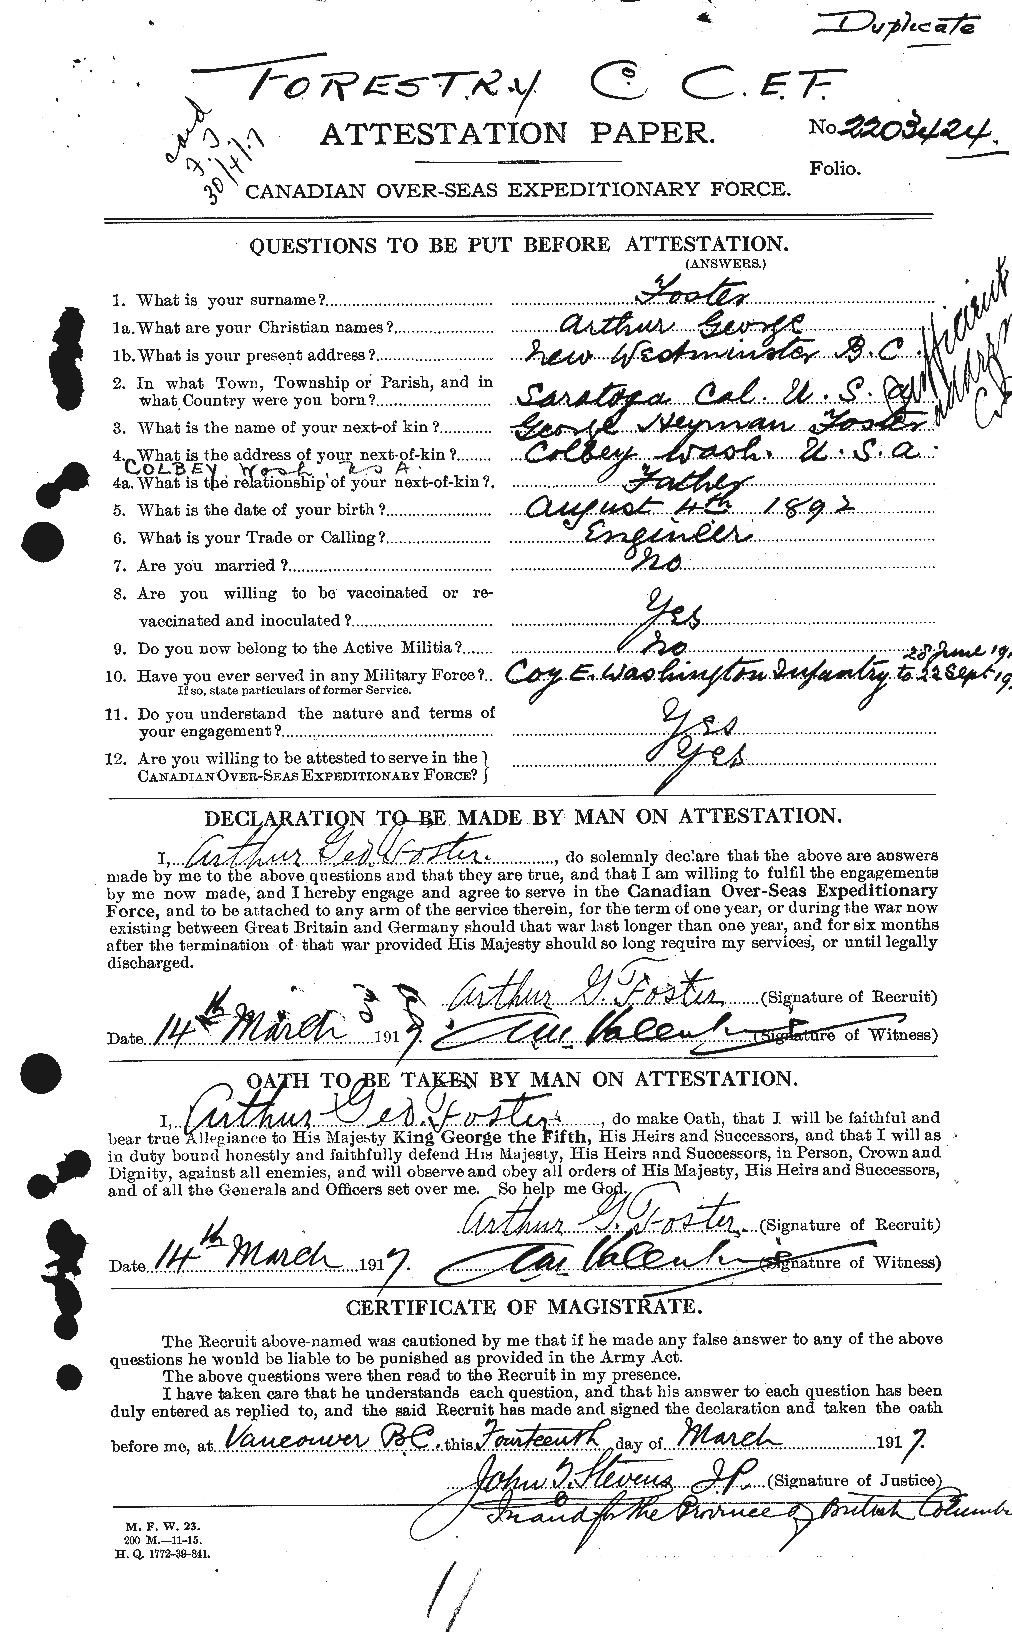 Dossiers du Personnel de la Première Guerre mondiale - CEC 330472a